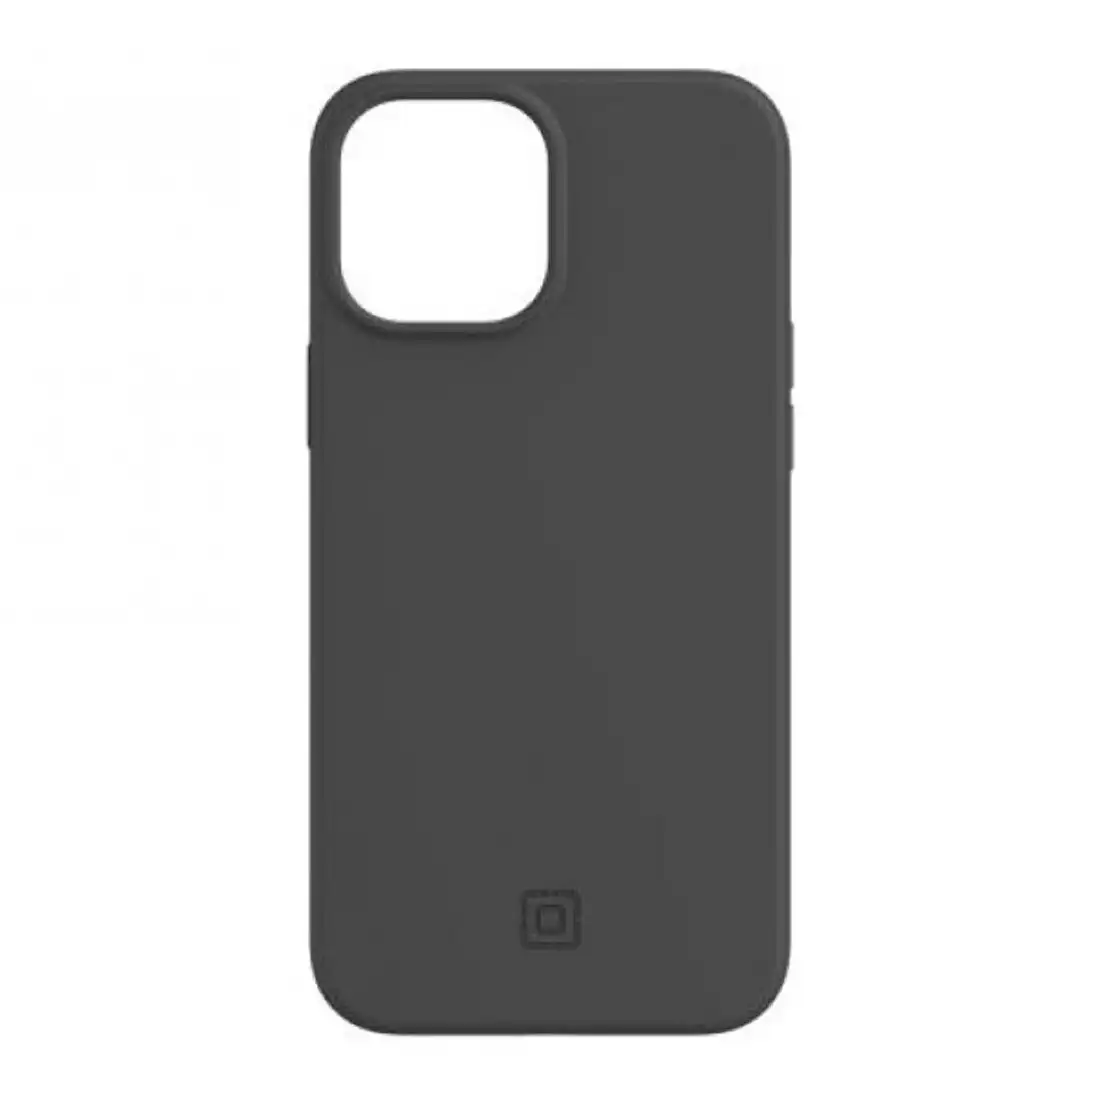 Incipio Organicore 2.0 Case for iPhone 12 Pro Max - Charcoal